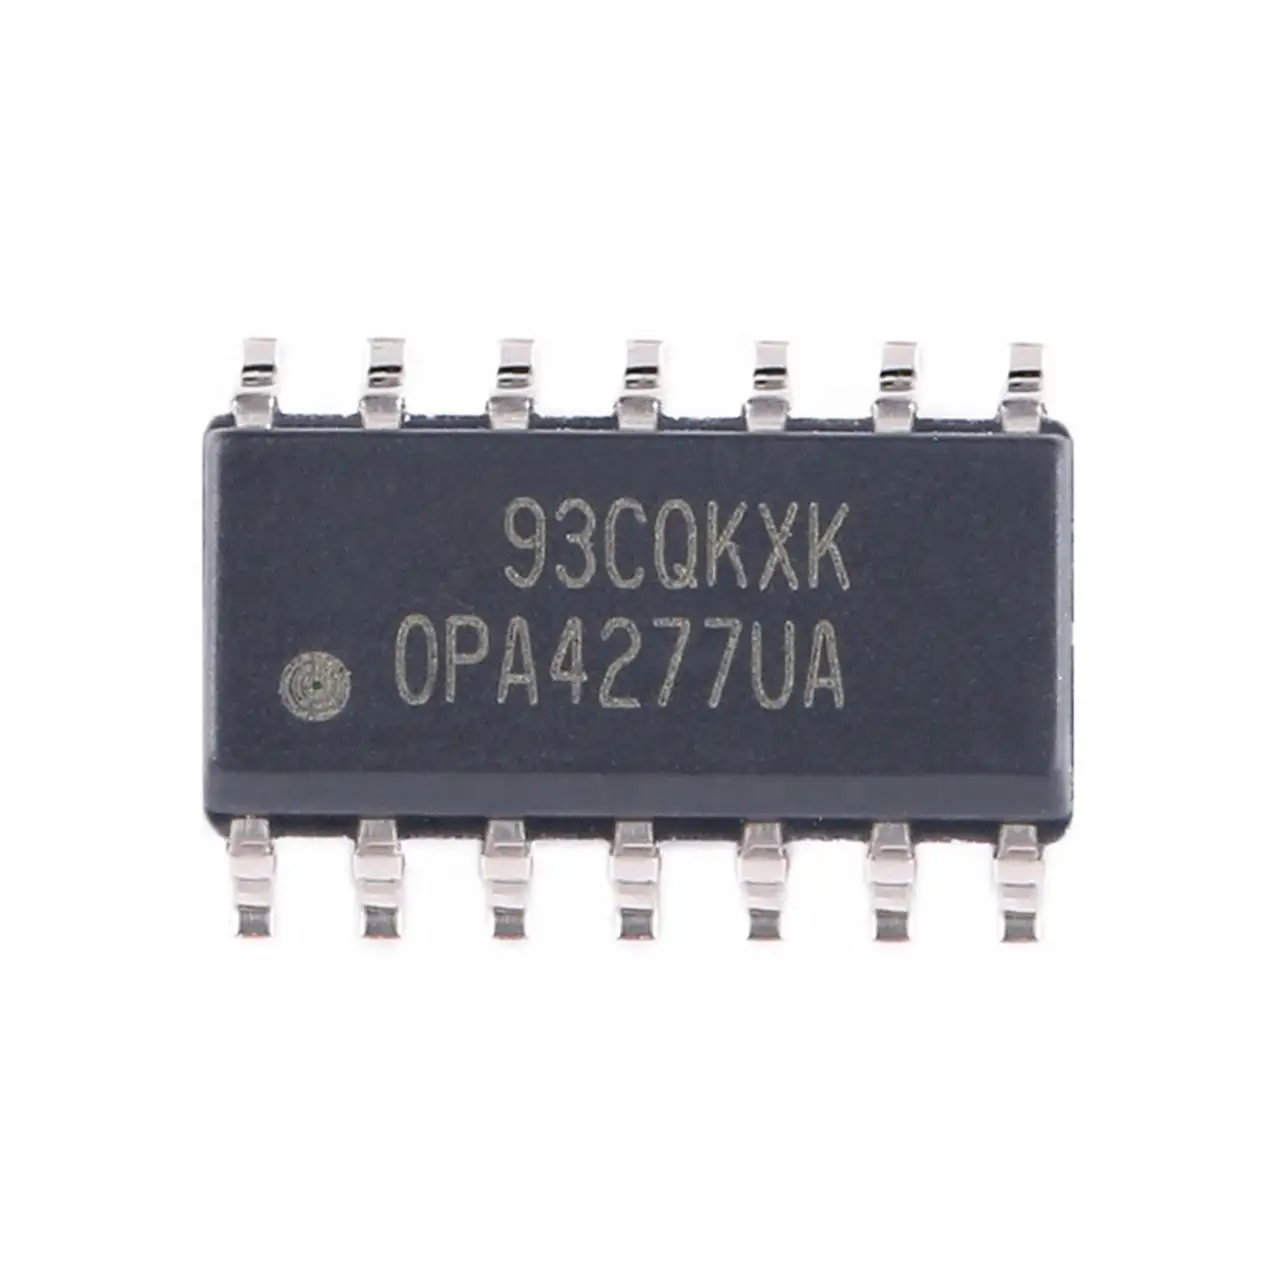 Originele Geïntegreerde Schakeling Opa4277ua Power Mcu Ics Chip Leverancier Distributeur Bom Lijst Deel Pcba Board Elektronische Component